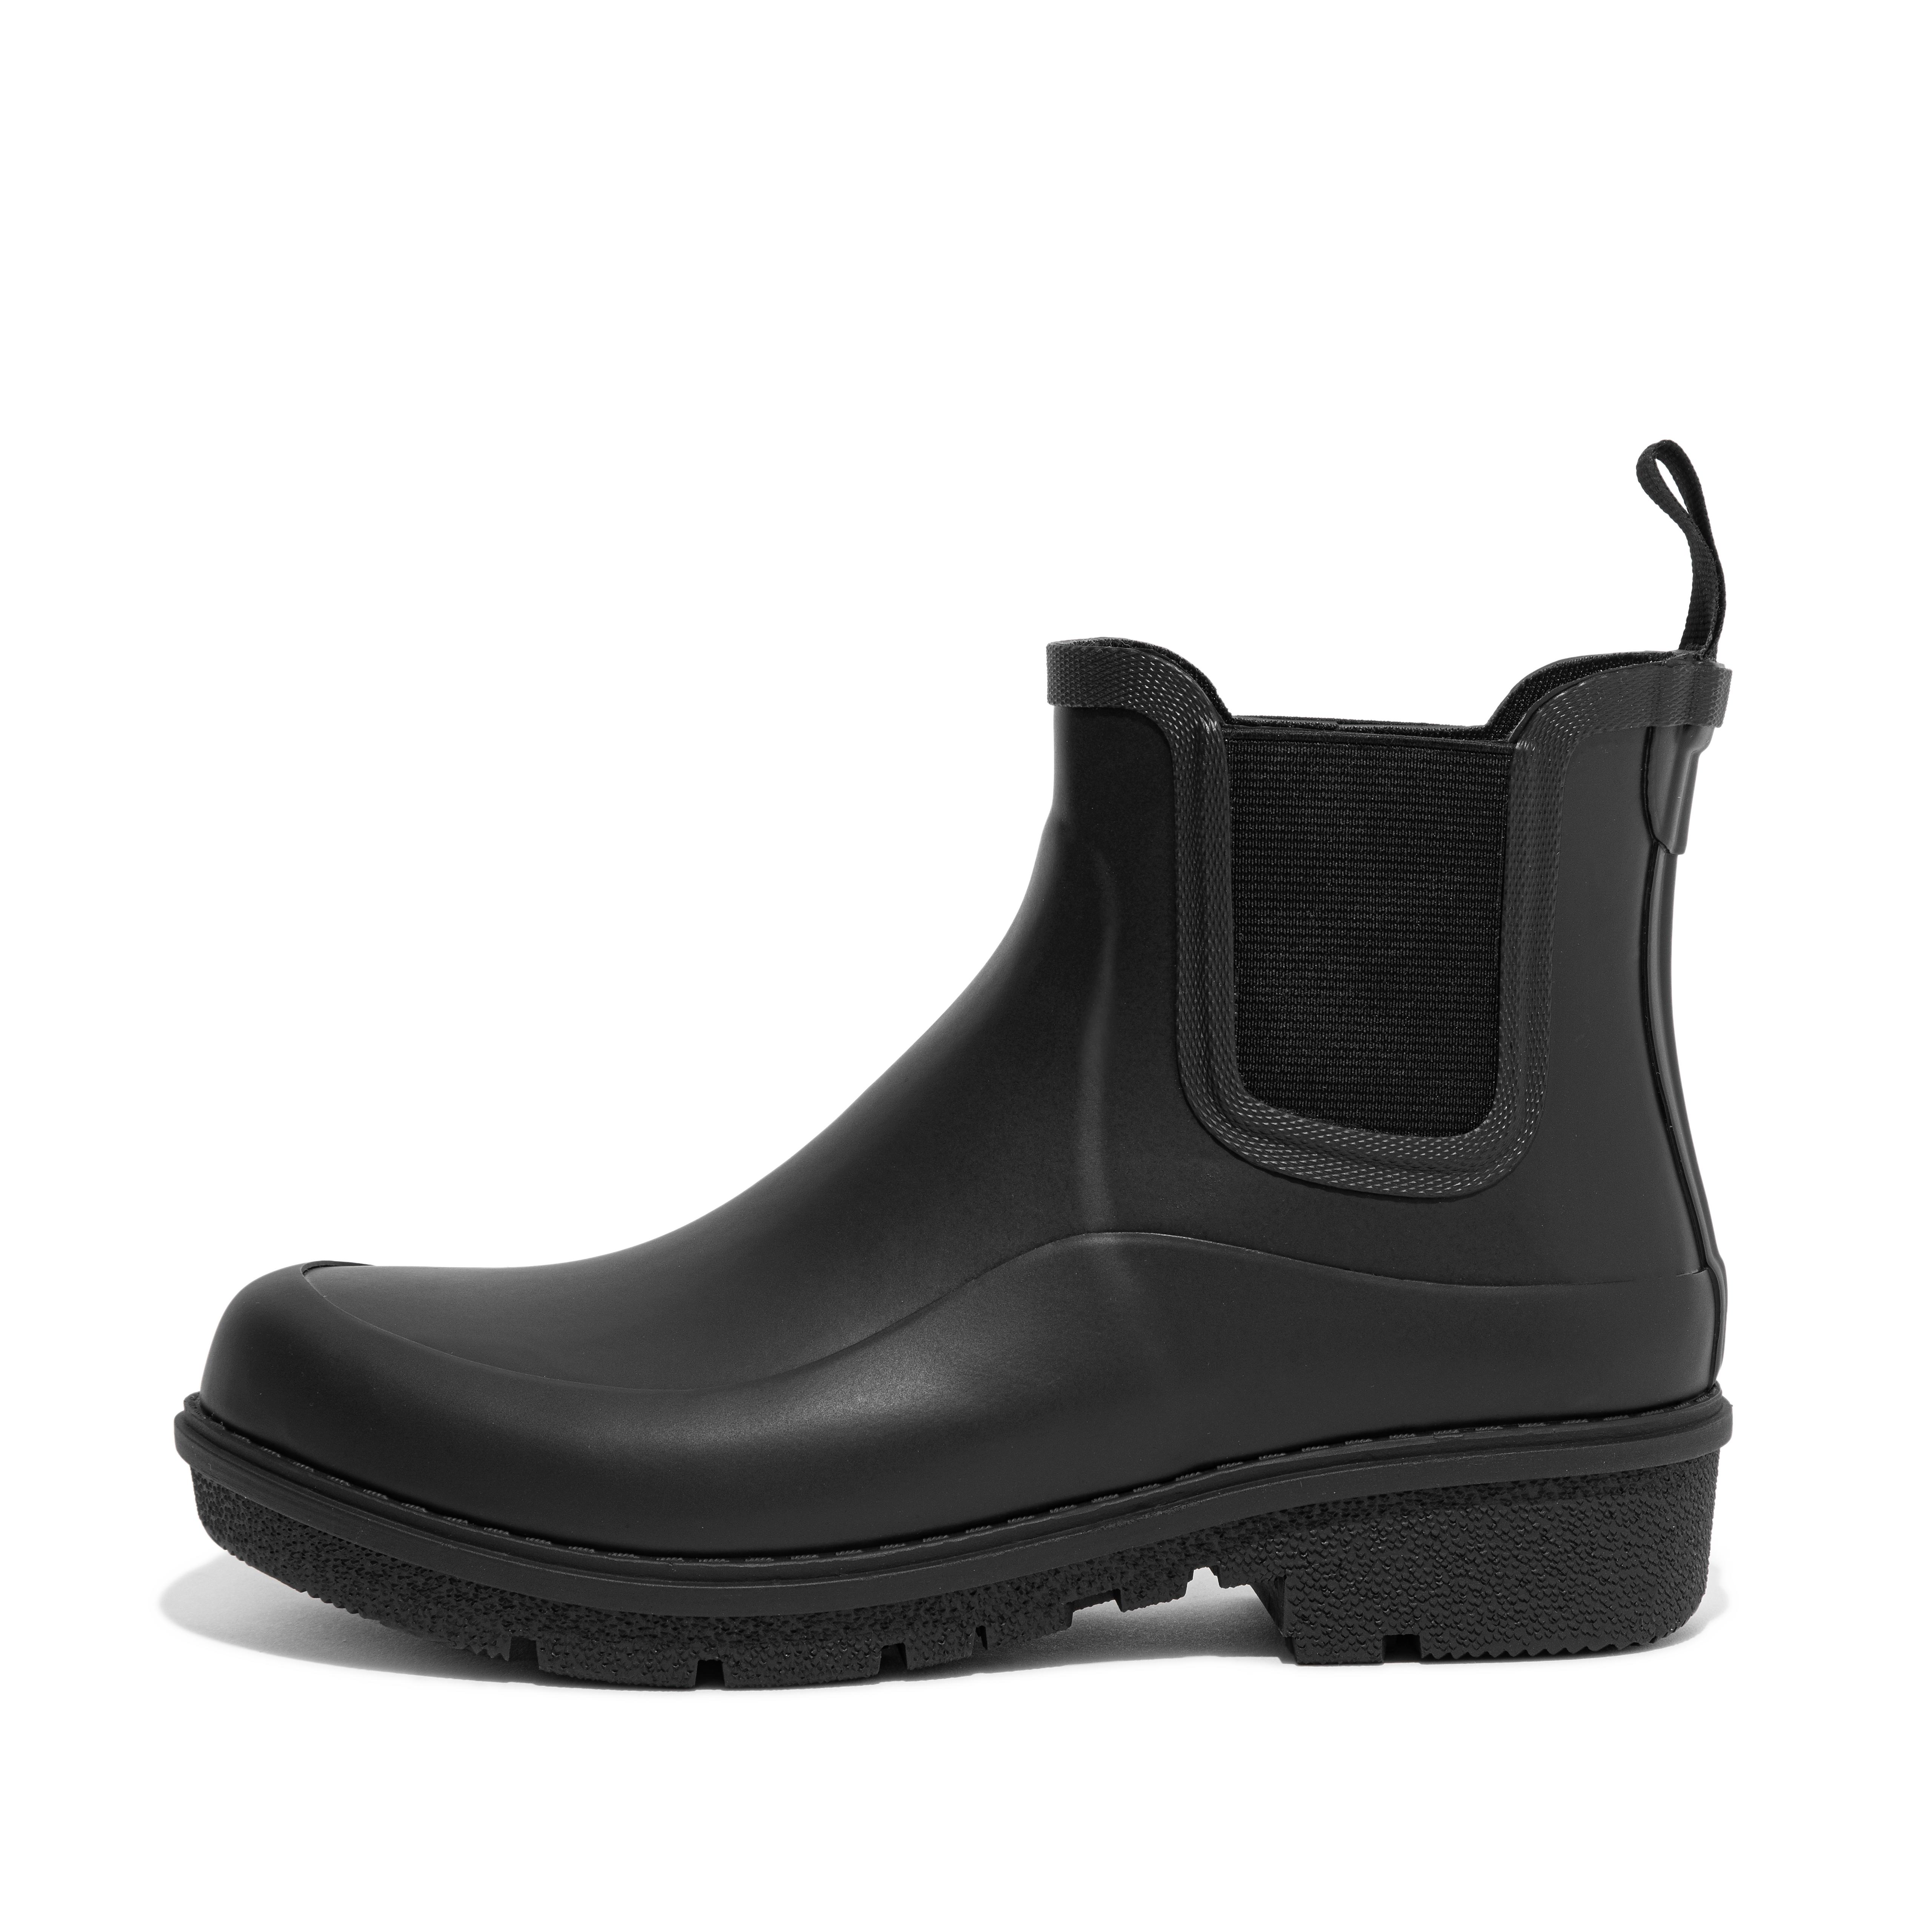 Women's Wonderwelly Chelsea Rain Boots | FitFlop US